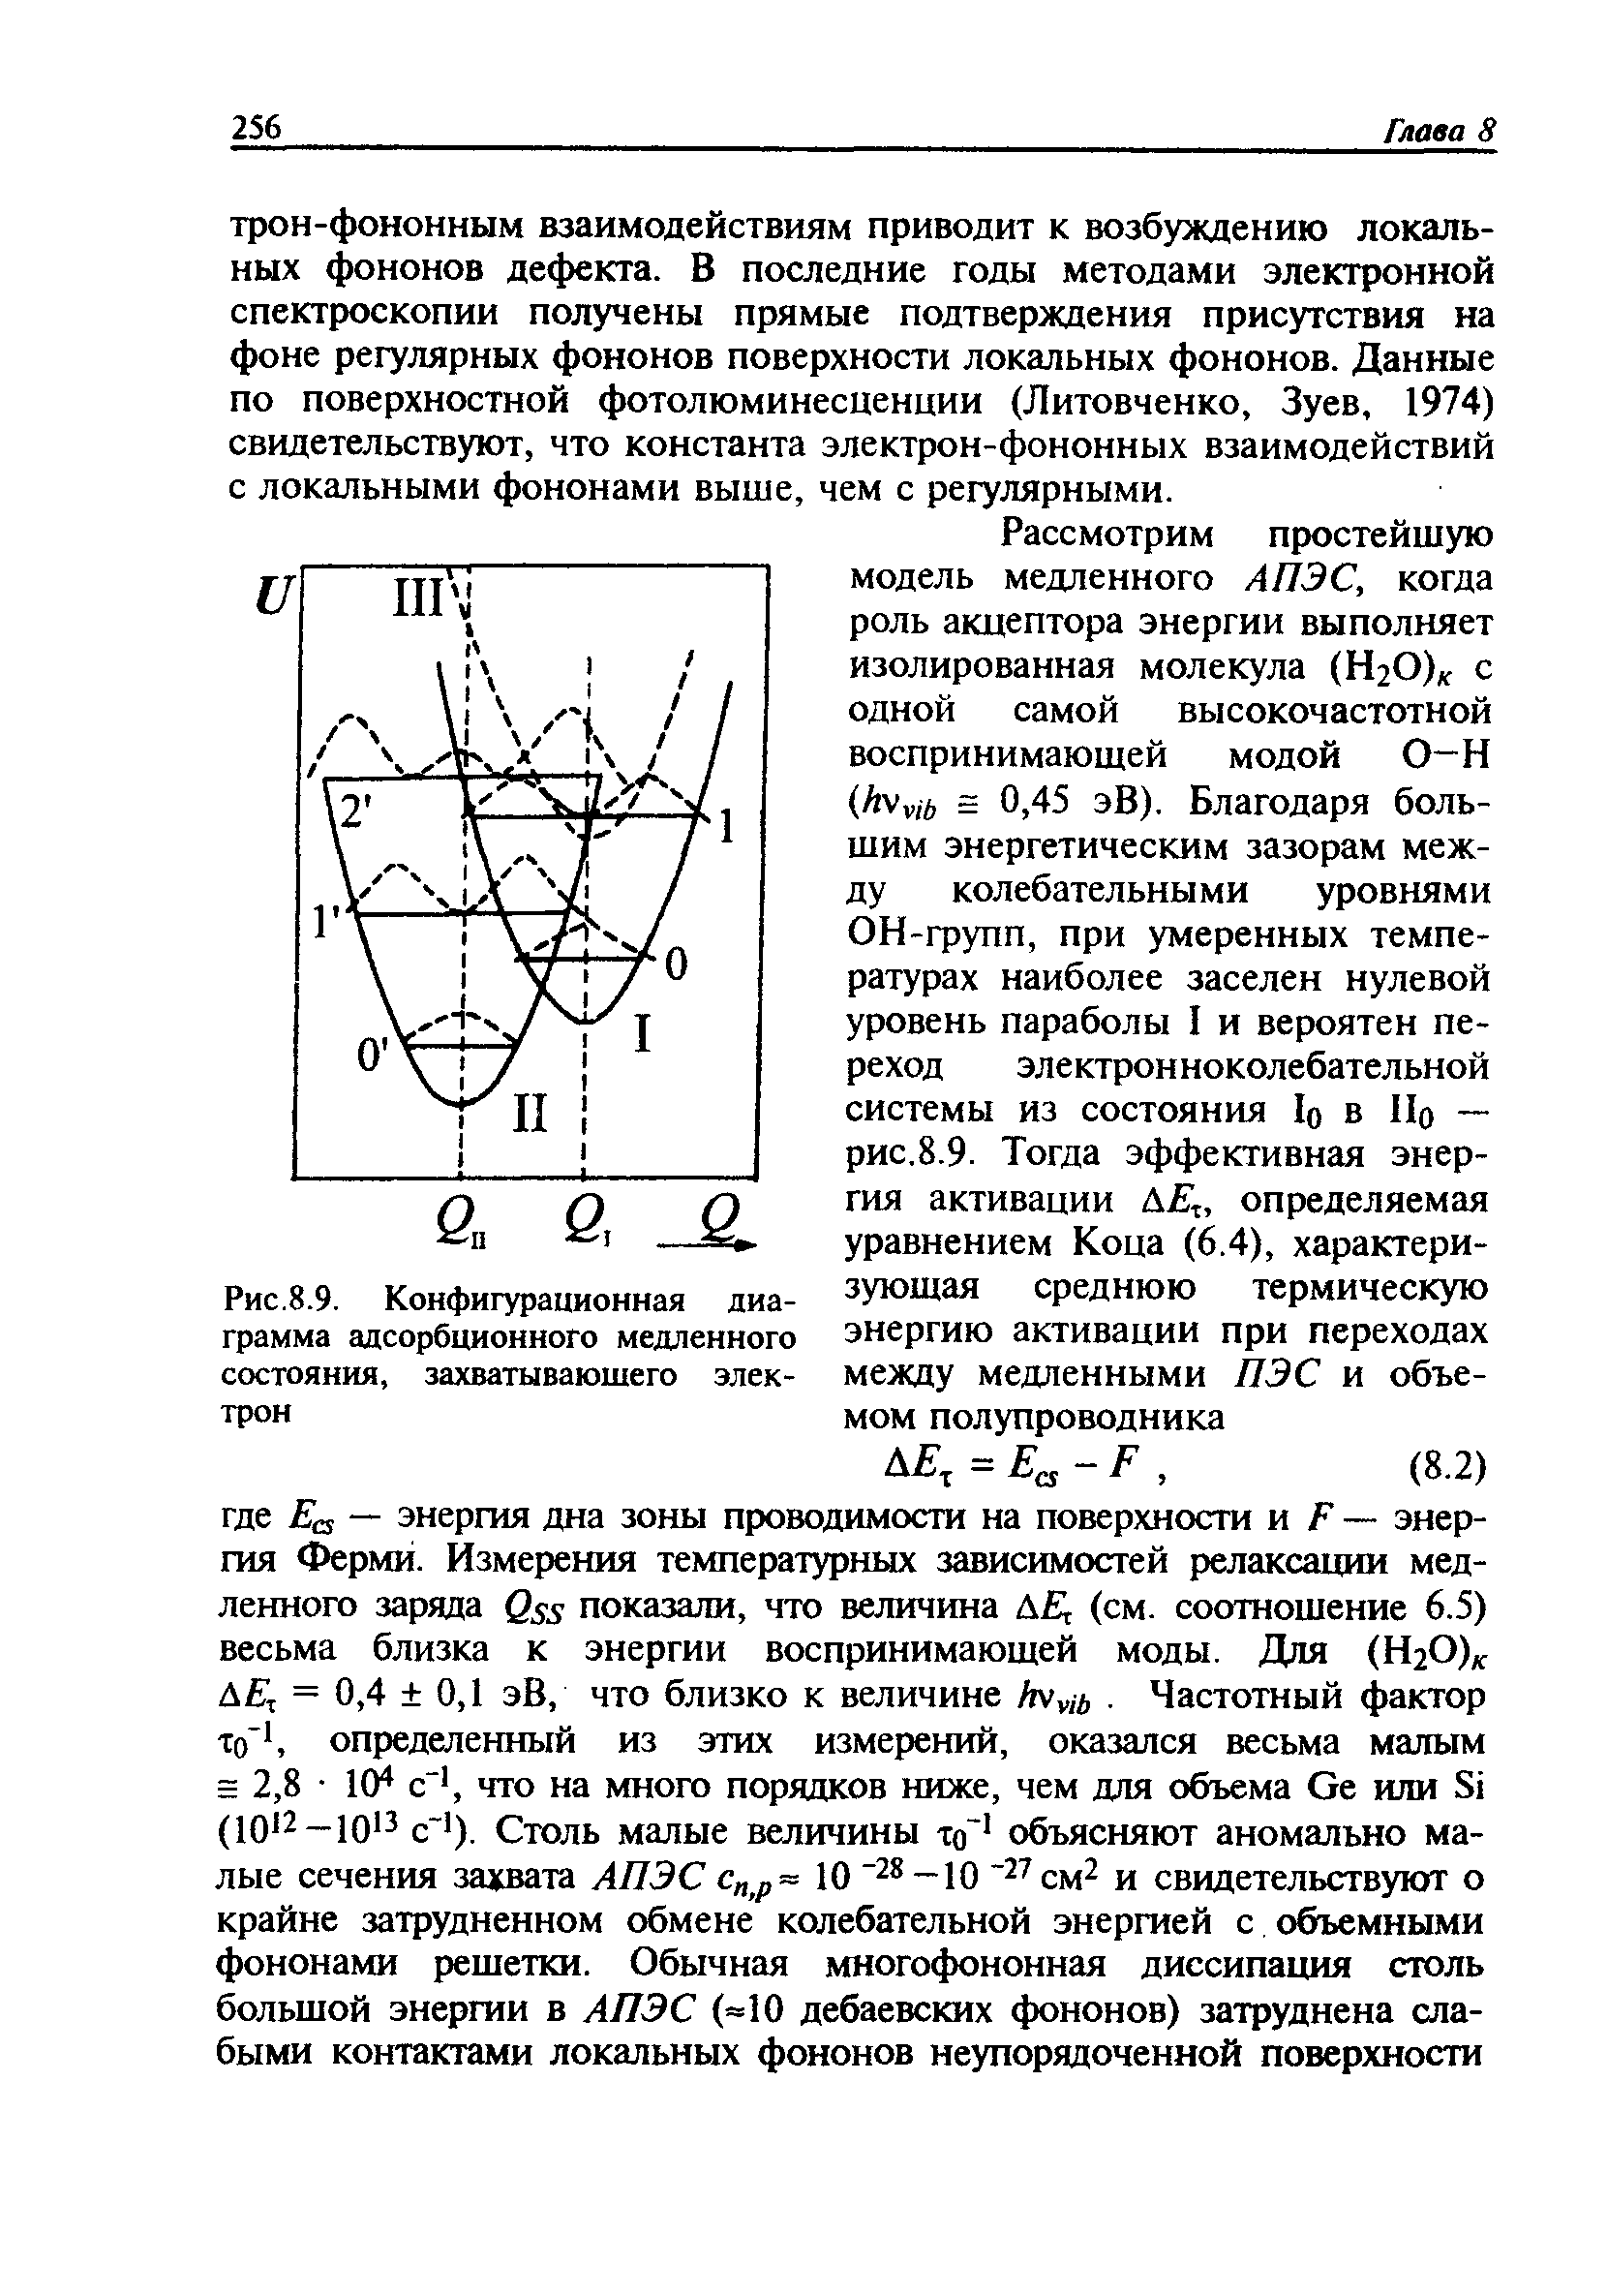 Рис.8.9. Конфигурационная диаграмма адсорбционного медленного состояния, захватывающего электрон
